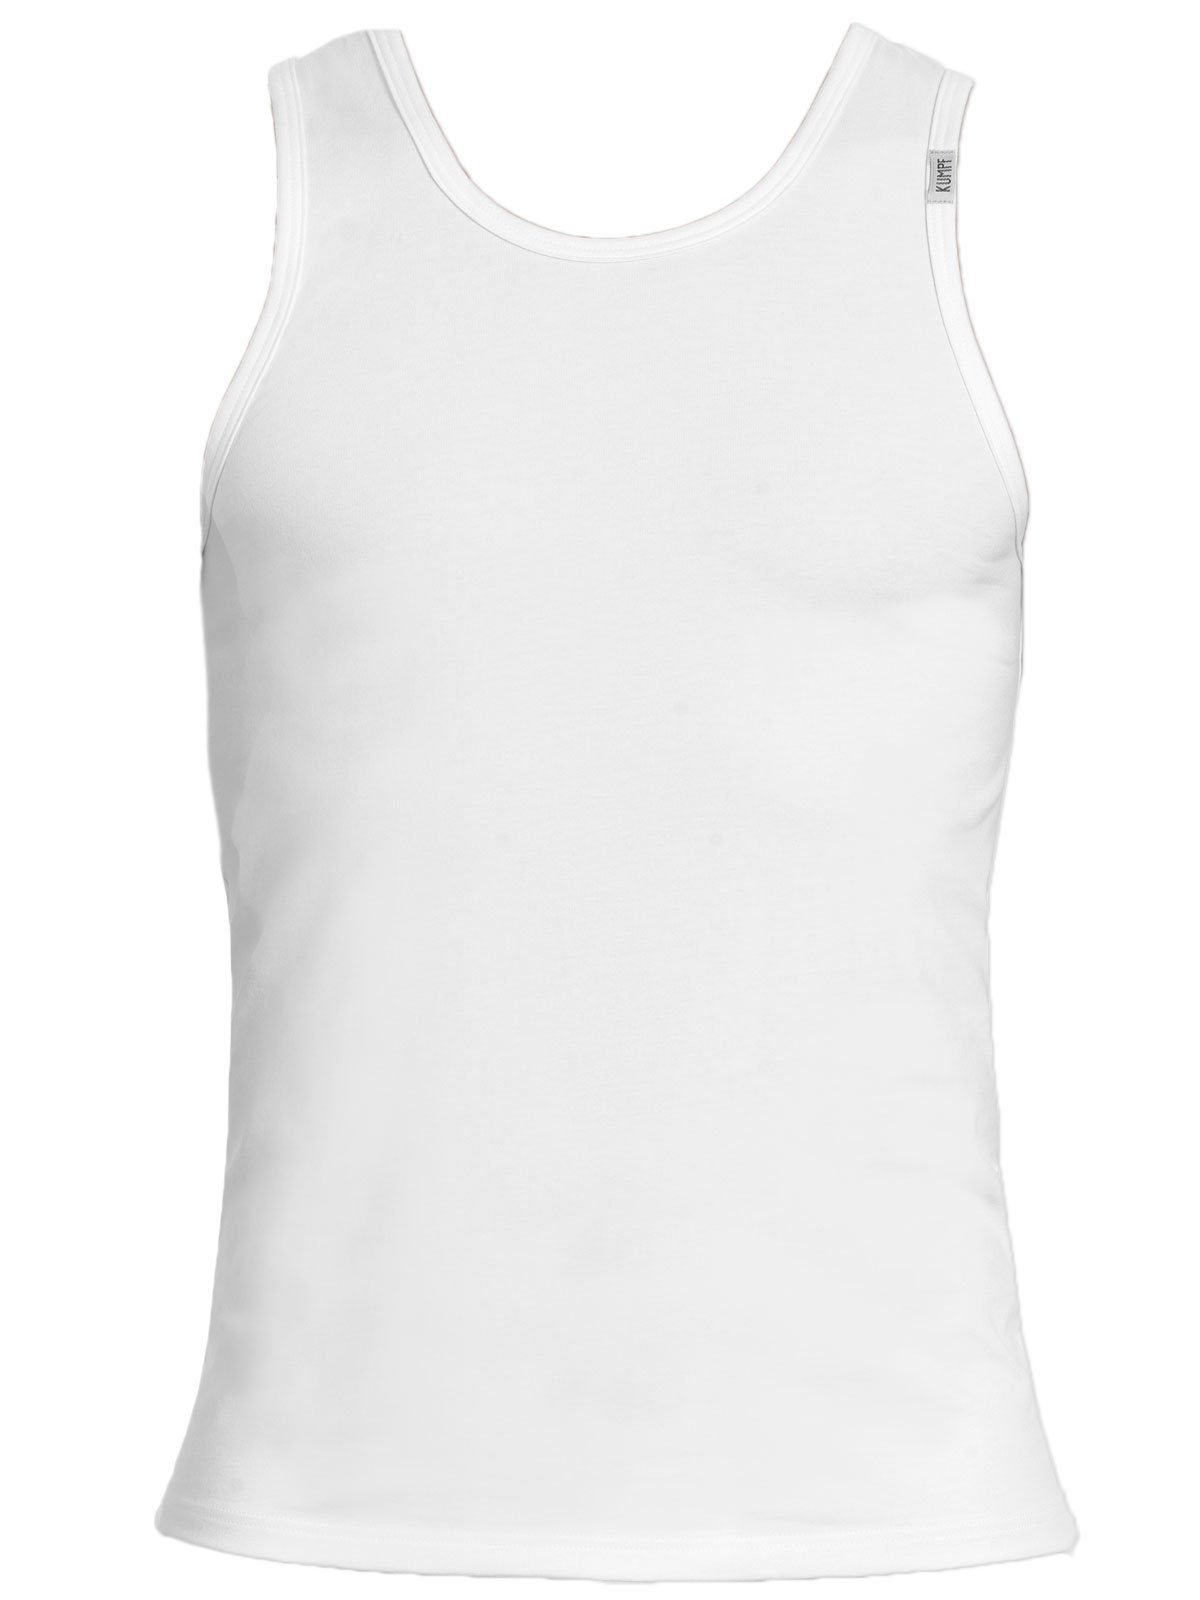 KUMPF 4er darkblue Achselhemd Unterhemd Markenqualität weiss 4-St) hohe Bio Cotton Herren (Spar-Set, Sparpack